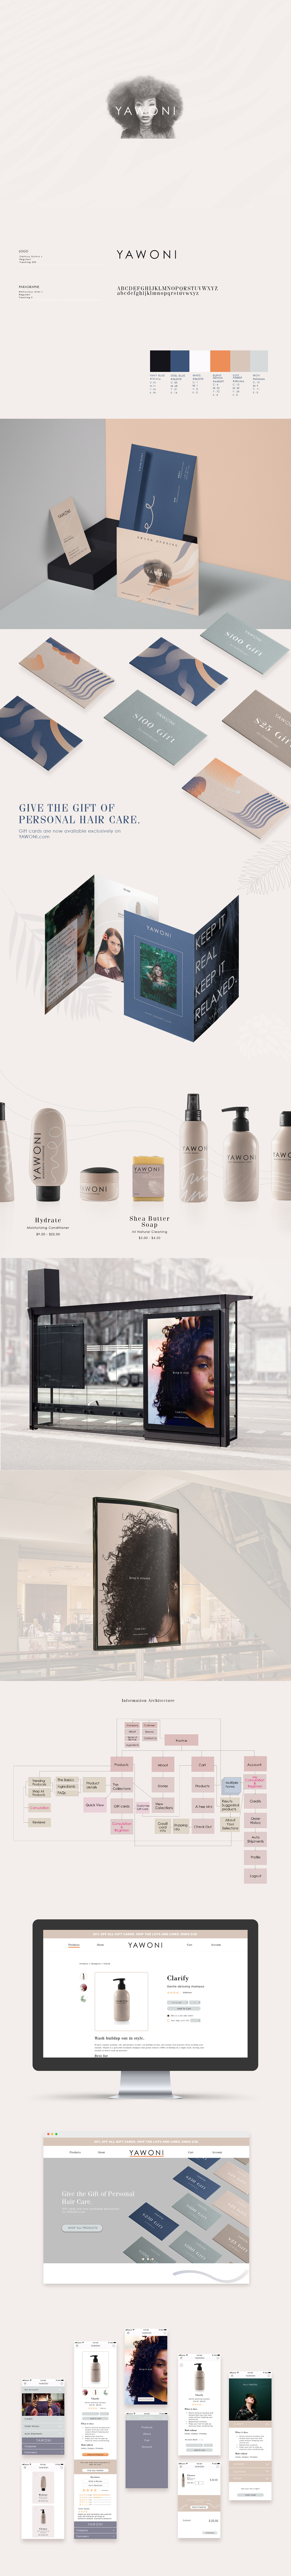 Cosmetic branding  Responsive Wesite UI package design 